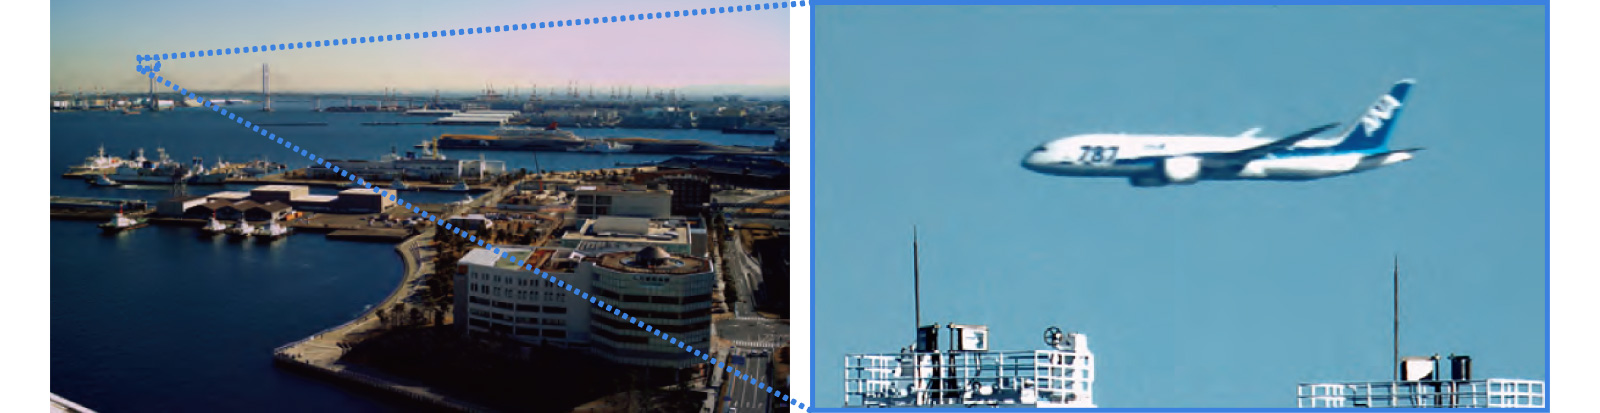 撮影した映像（写真左）を電子ズームし、さらに画像処理技術を活用。人間の眼では認識することが難しい約18km先を飛行する機体文字の識別が可能に。（写真右）（EF800mm望遠レンズと電子ズームを用いた試作機での撮影）の画像